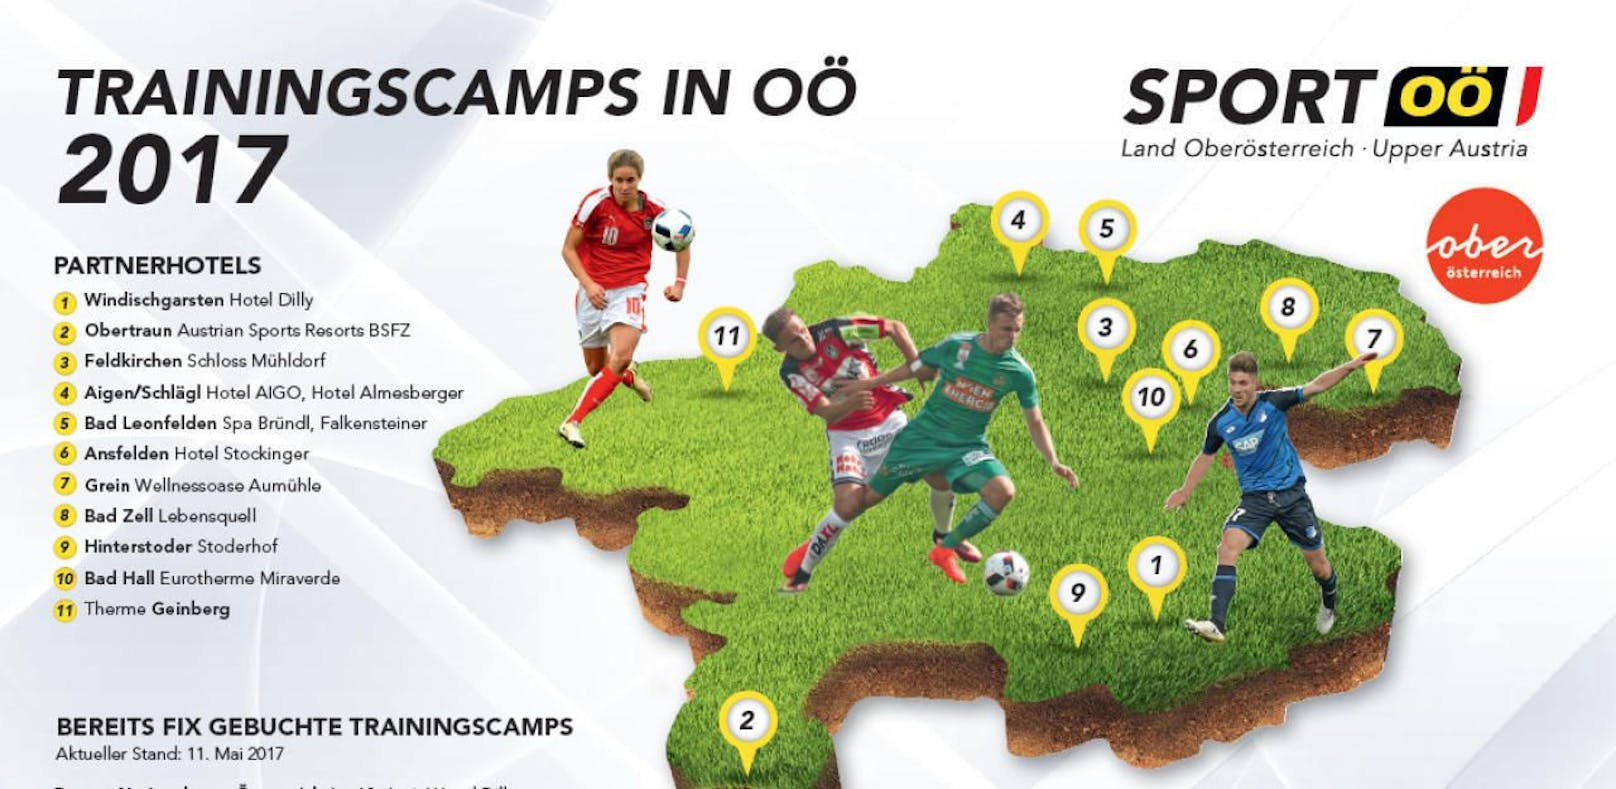 Zahlreiche internationale Fußballteams trainieren im Sommer in Oberösterreich.